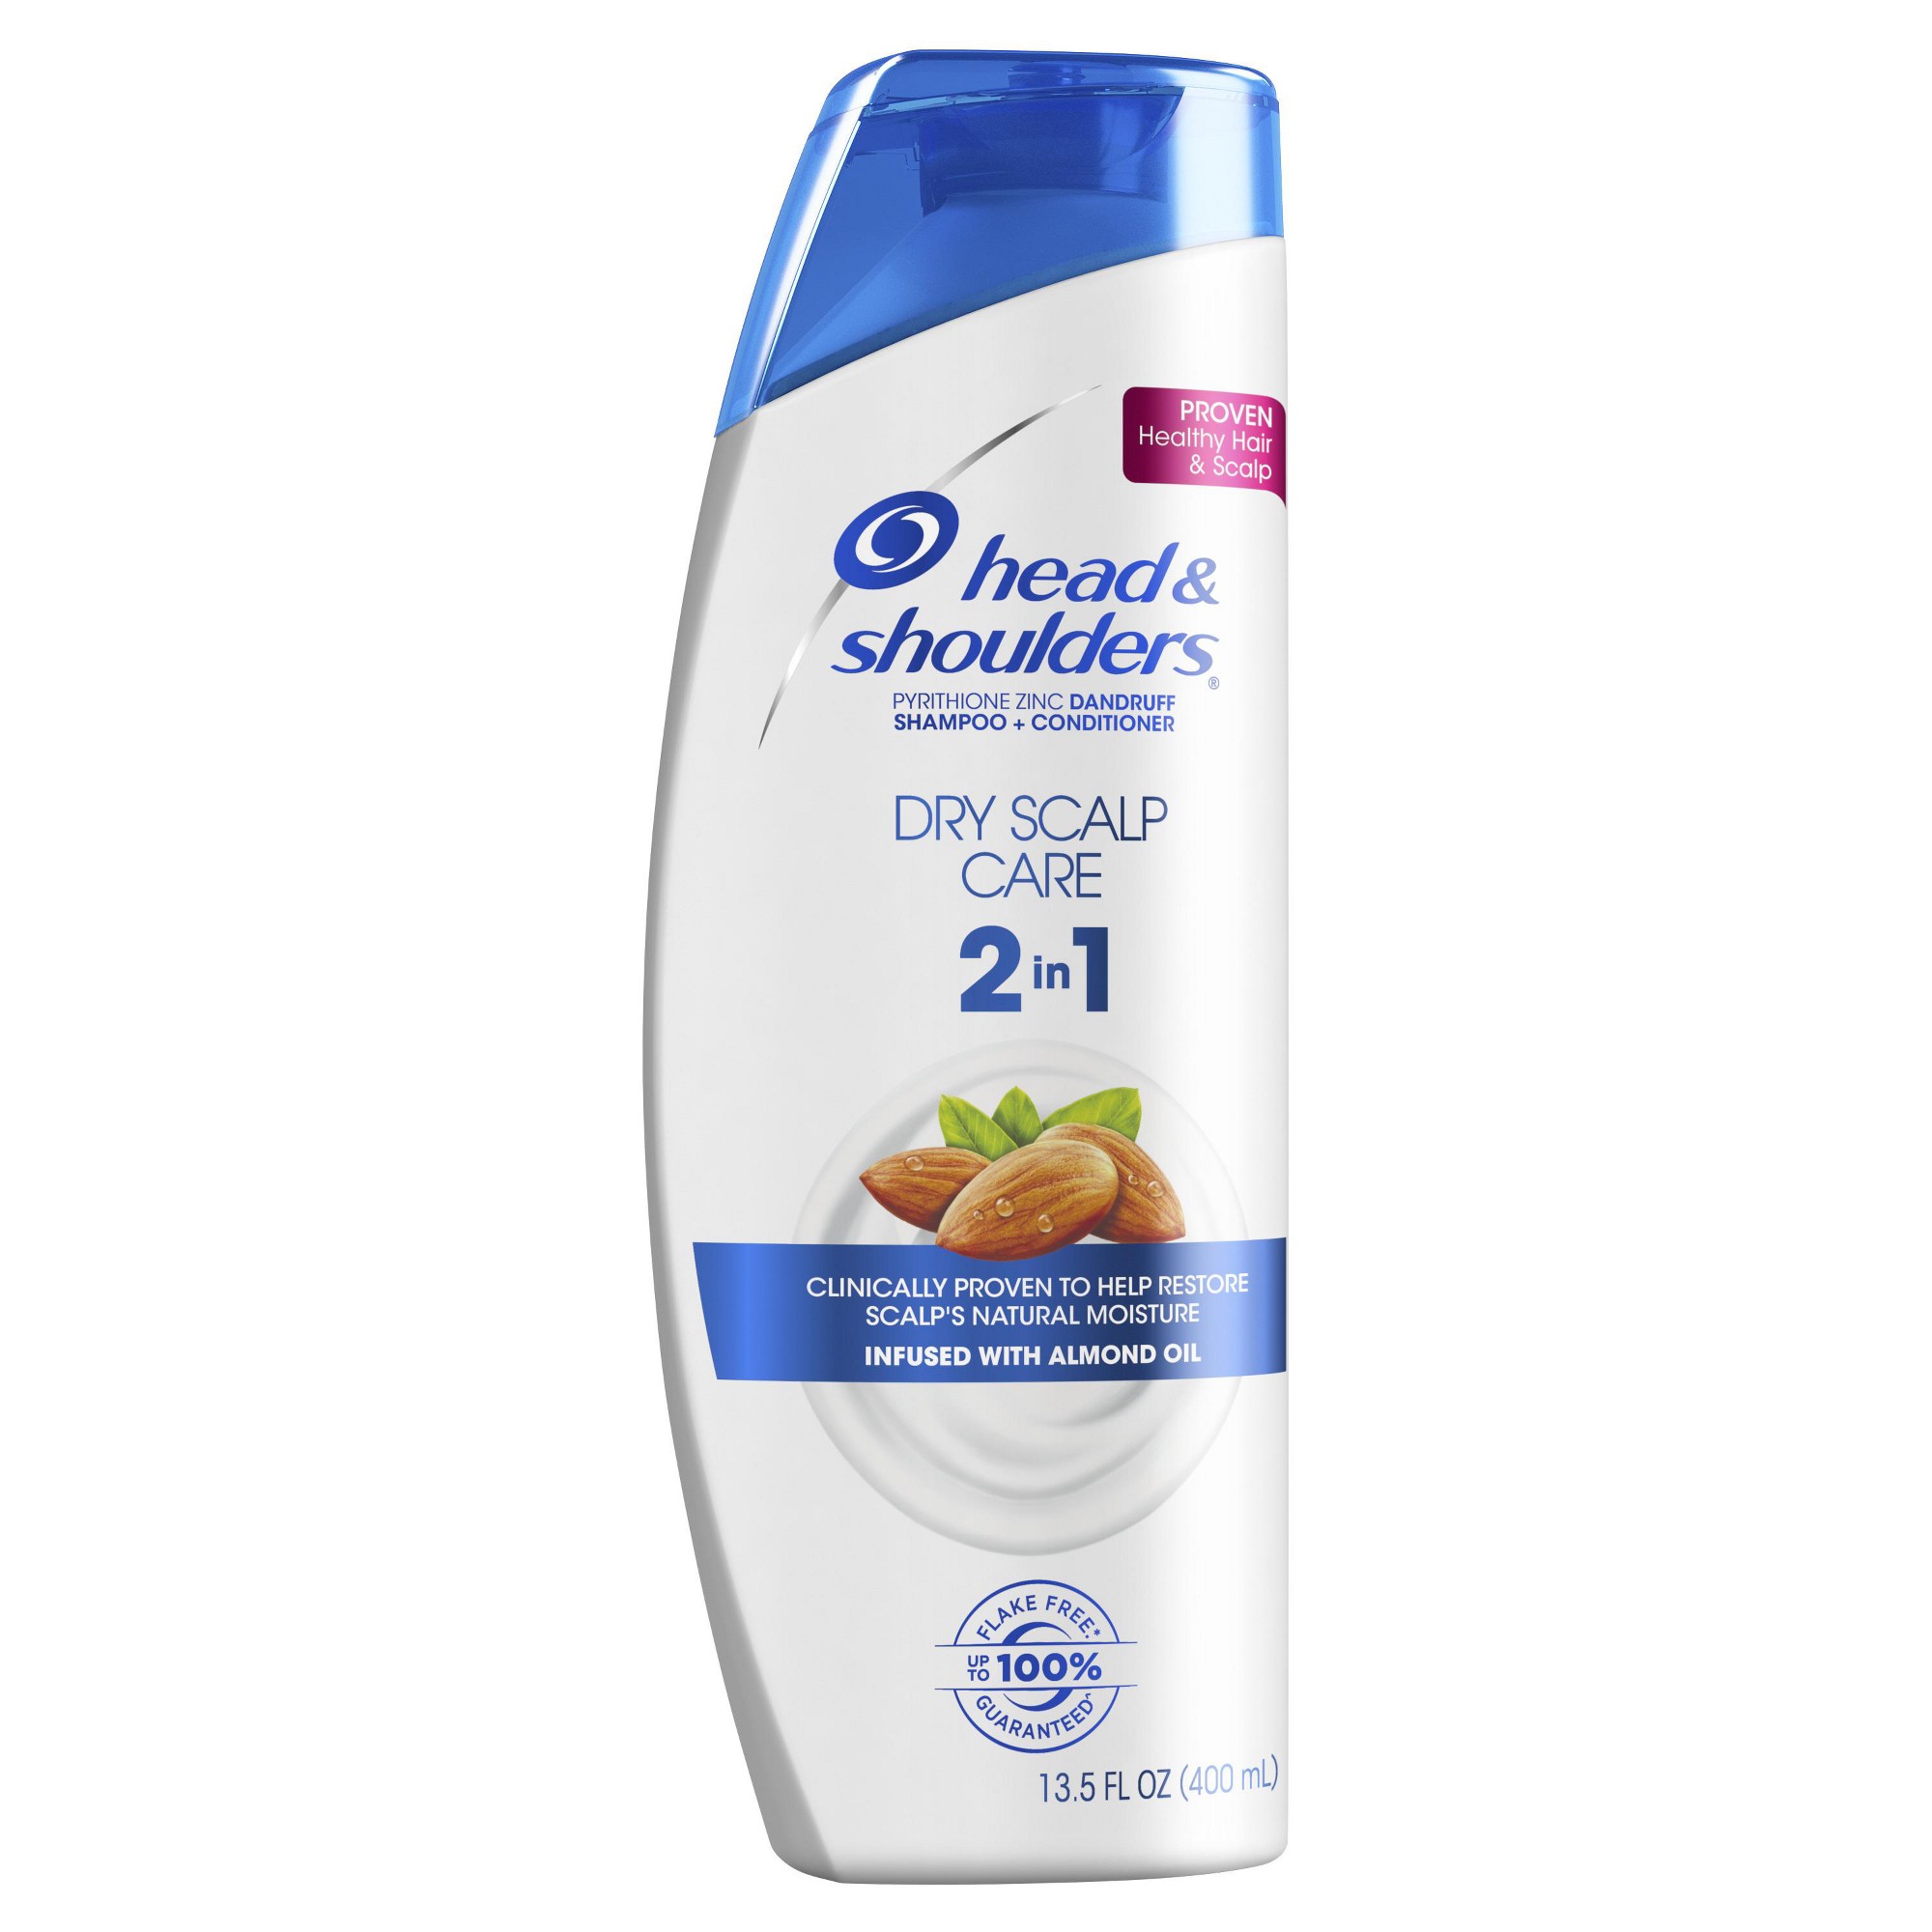 Head and Shoulders Dry Scalp Care Anti-Dandruff 2 in 1 Shampoo & Conditioner - 13.5 fl oz